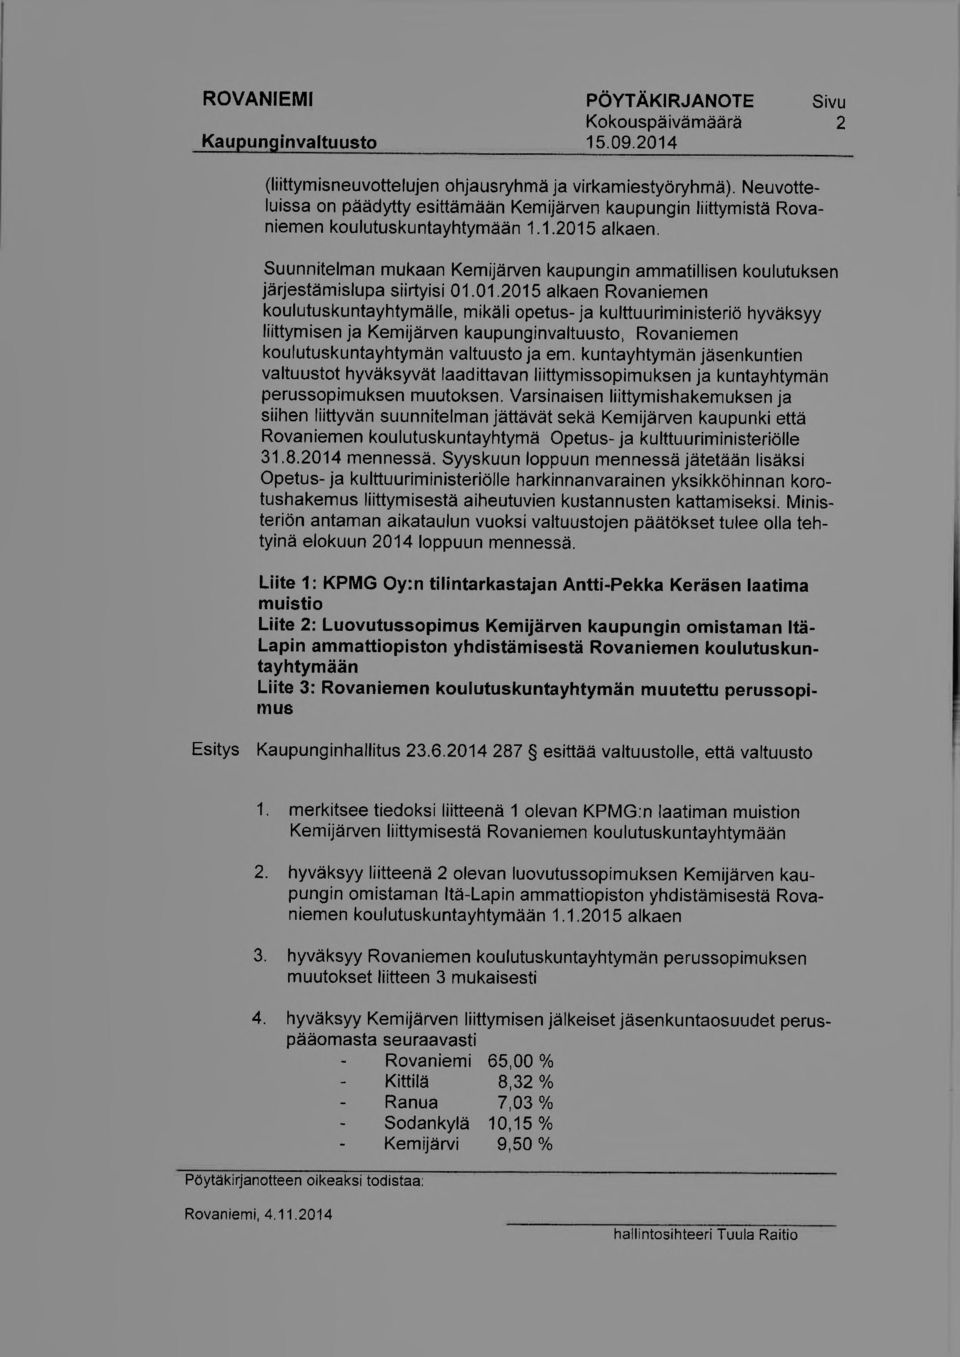 Suunnitelman mukaan Kemijärven kaupungin ammatillisen koulutuksen järjestämislupa siirtyisi 01.